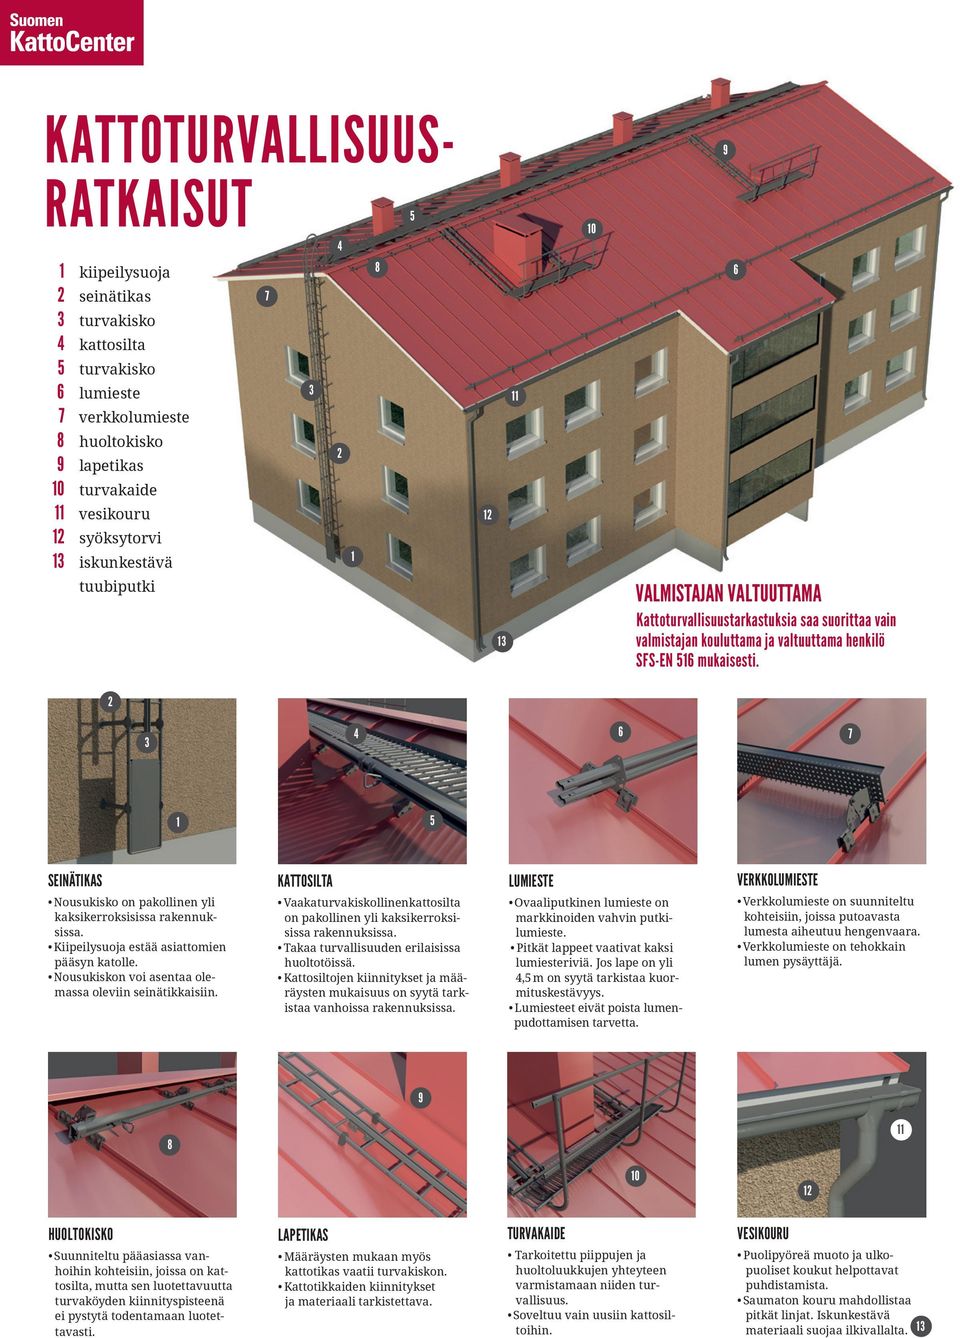 2 3 4 6 7 1 5 SEINÄTIKAS Nousukisko on pakollinen yli kaksikerroksisissa rakennuksissa. Kiipeilysuoja estää asiattomien pääsyn katolle. Nousukiskon voi asentaa olemassa oleviin seinätikkaisiin.